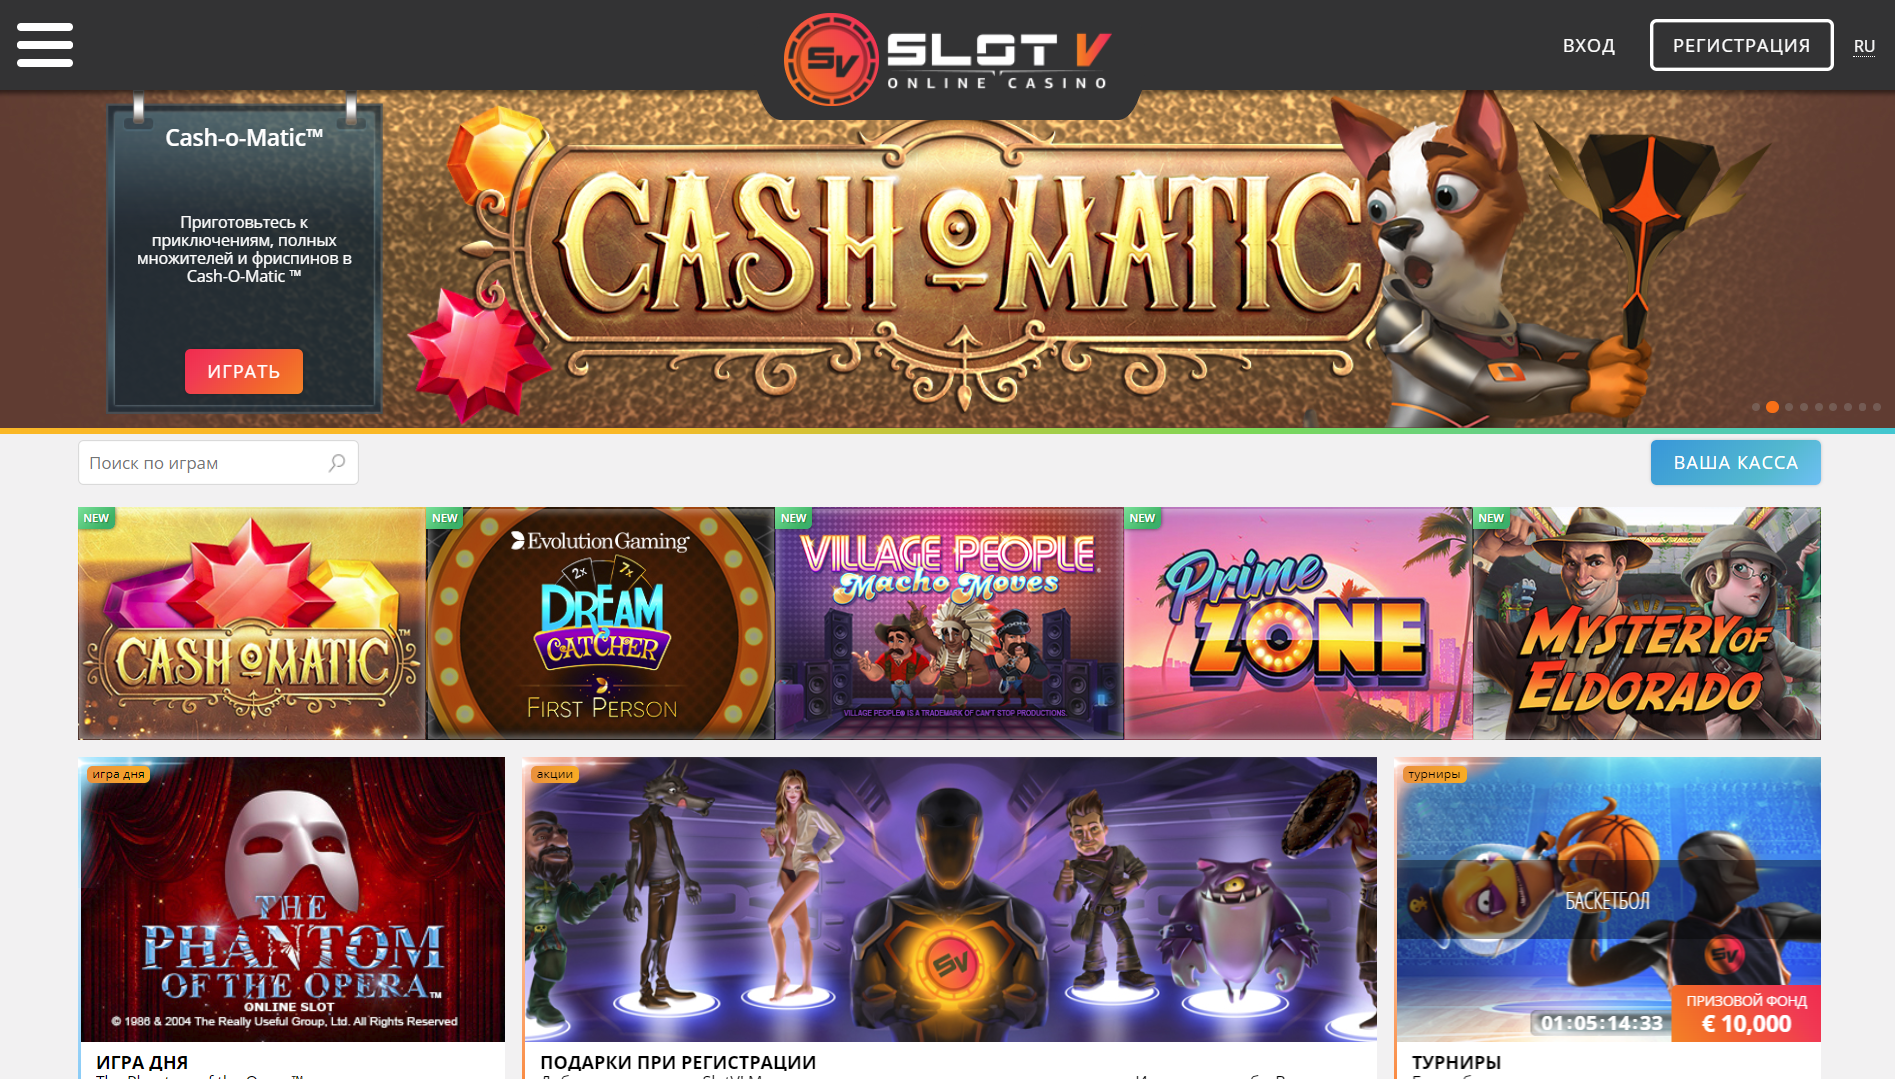 V slot casino регистрация азино777 скачать бесплатно официальный